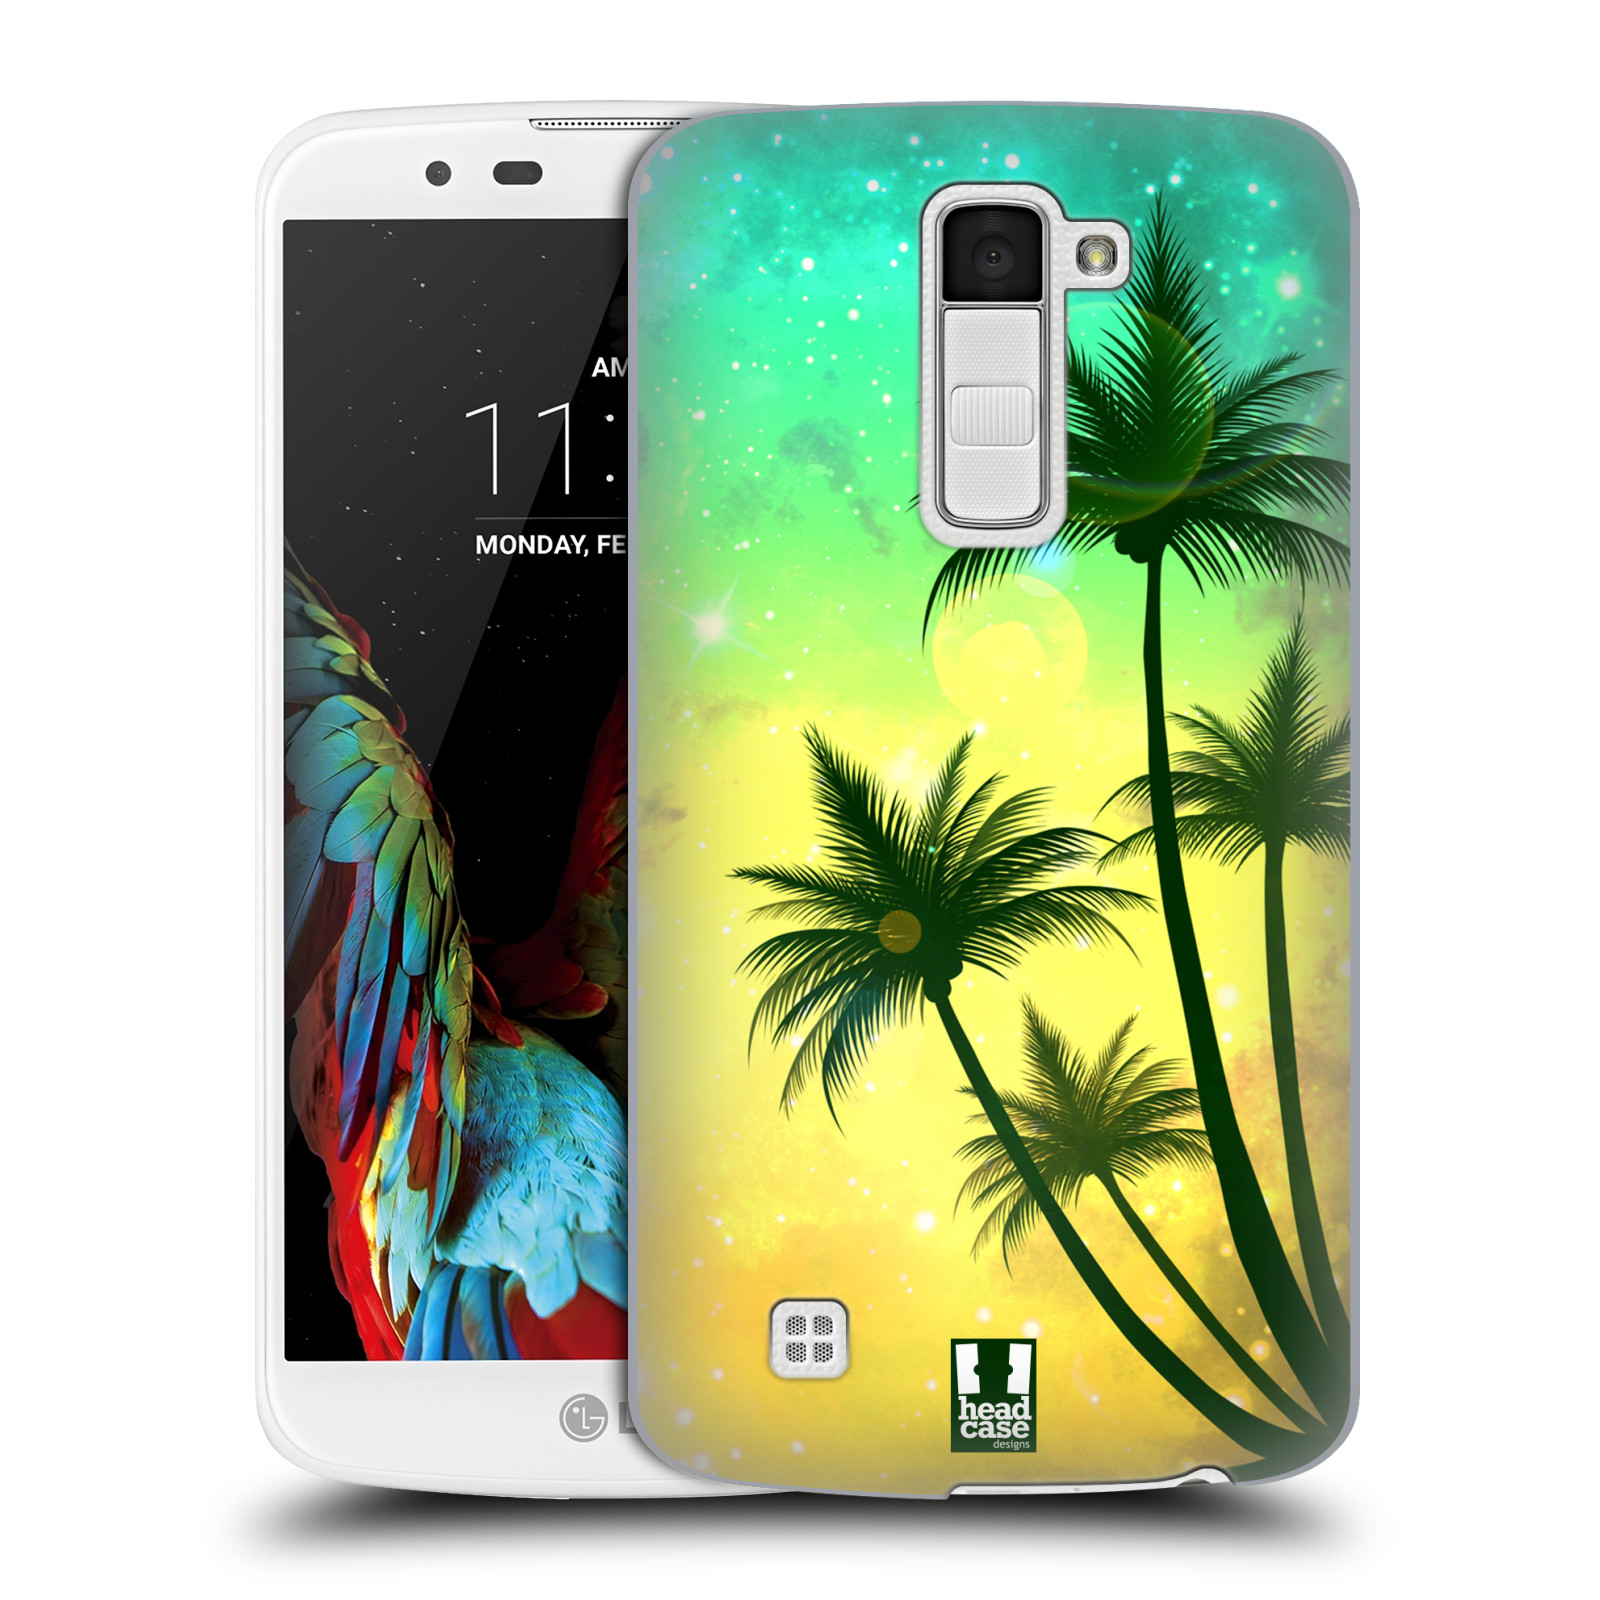 HEAD CASE plastový obal na mobil LG K10 vzor Kreslený motiv silueta moře a palmy TYRKYSOVÁ